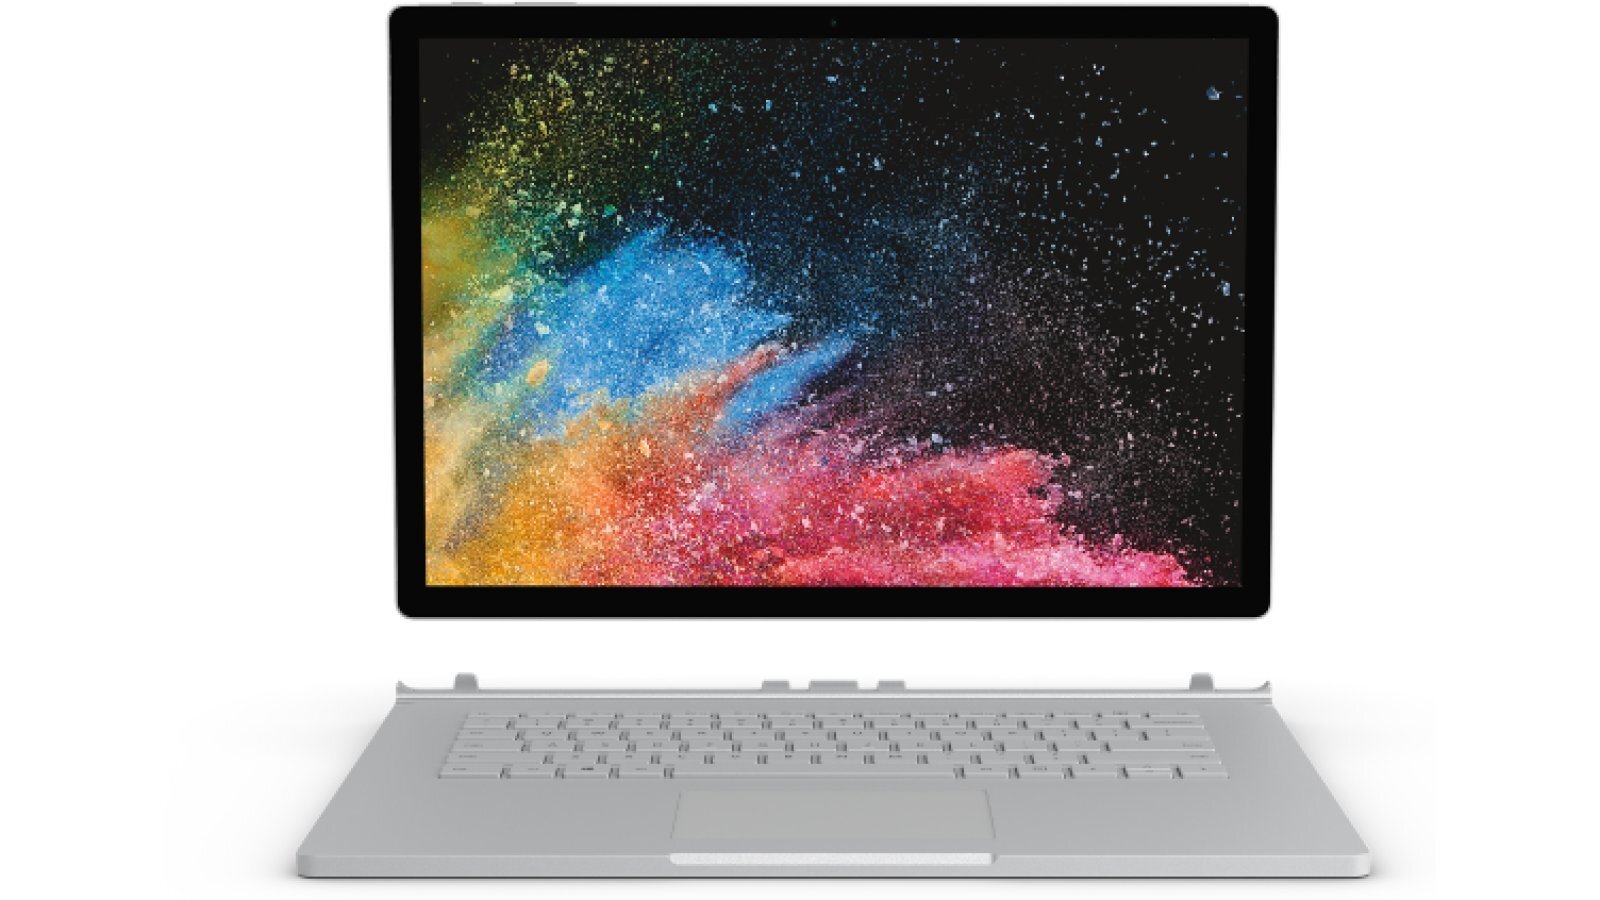 Η Microsoft ανανέωσε το Surface Book 2 με 8ης γενιάς επεξεργαστές Intel Core